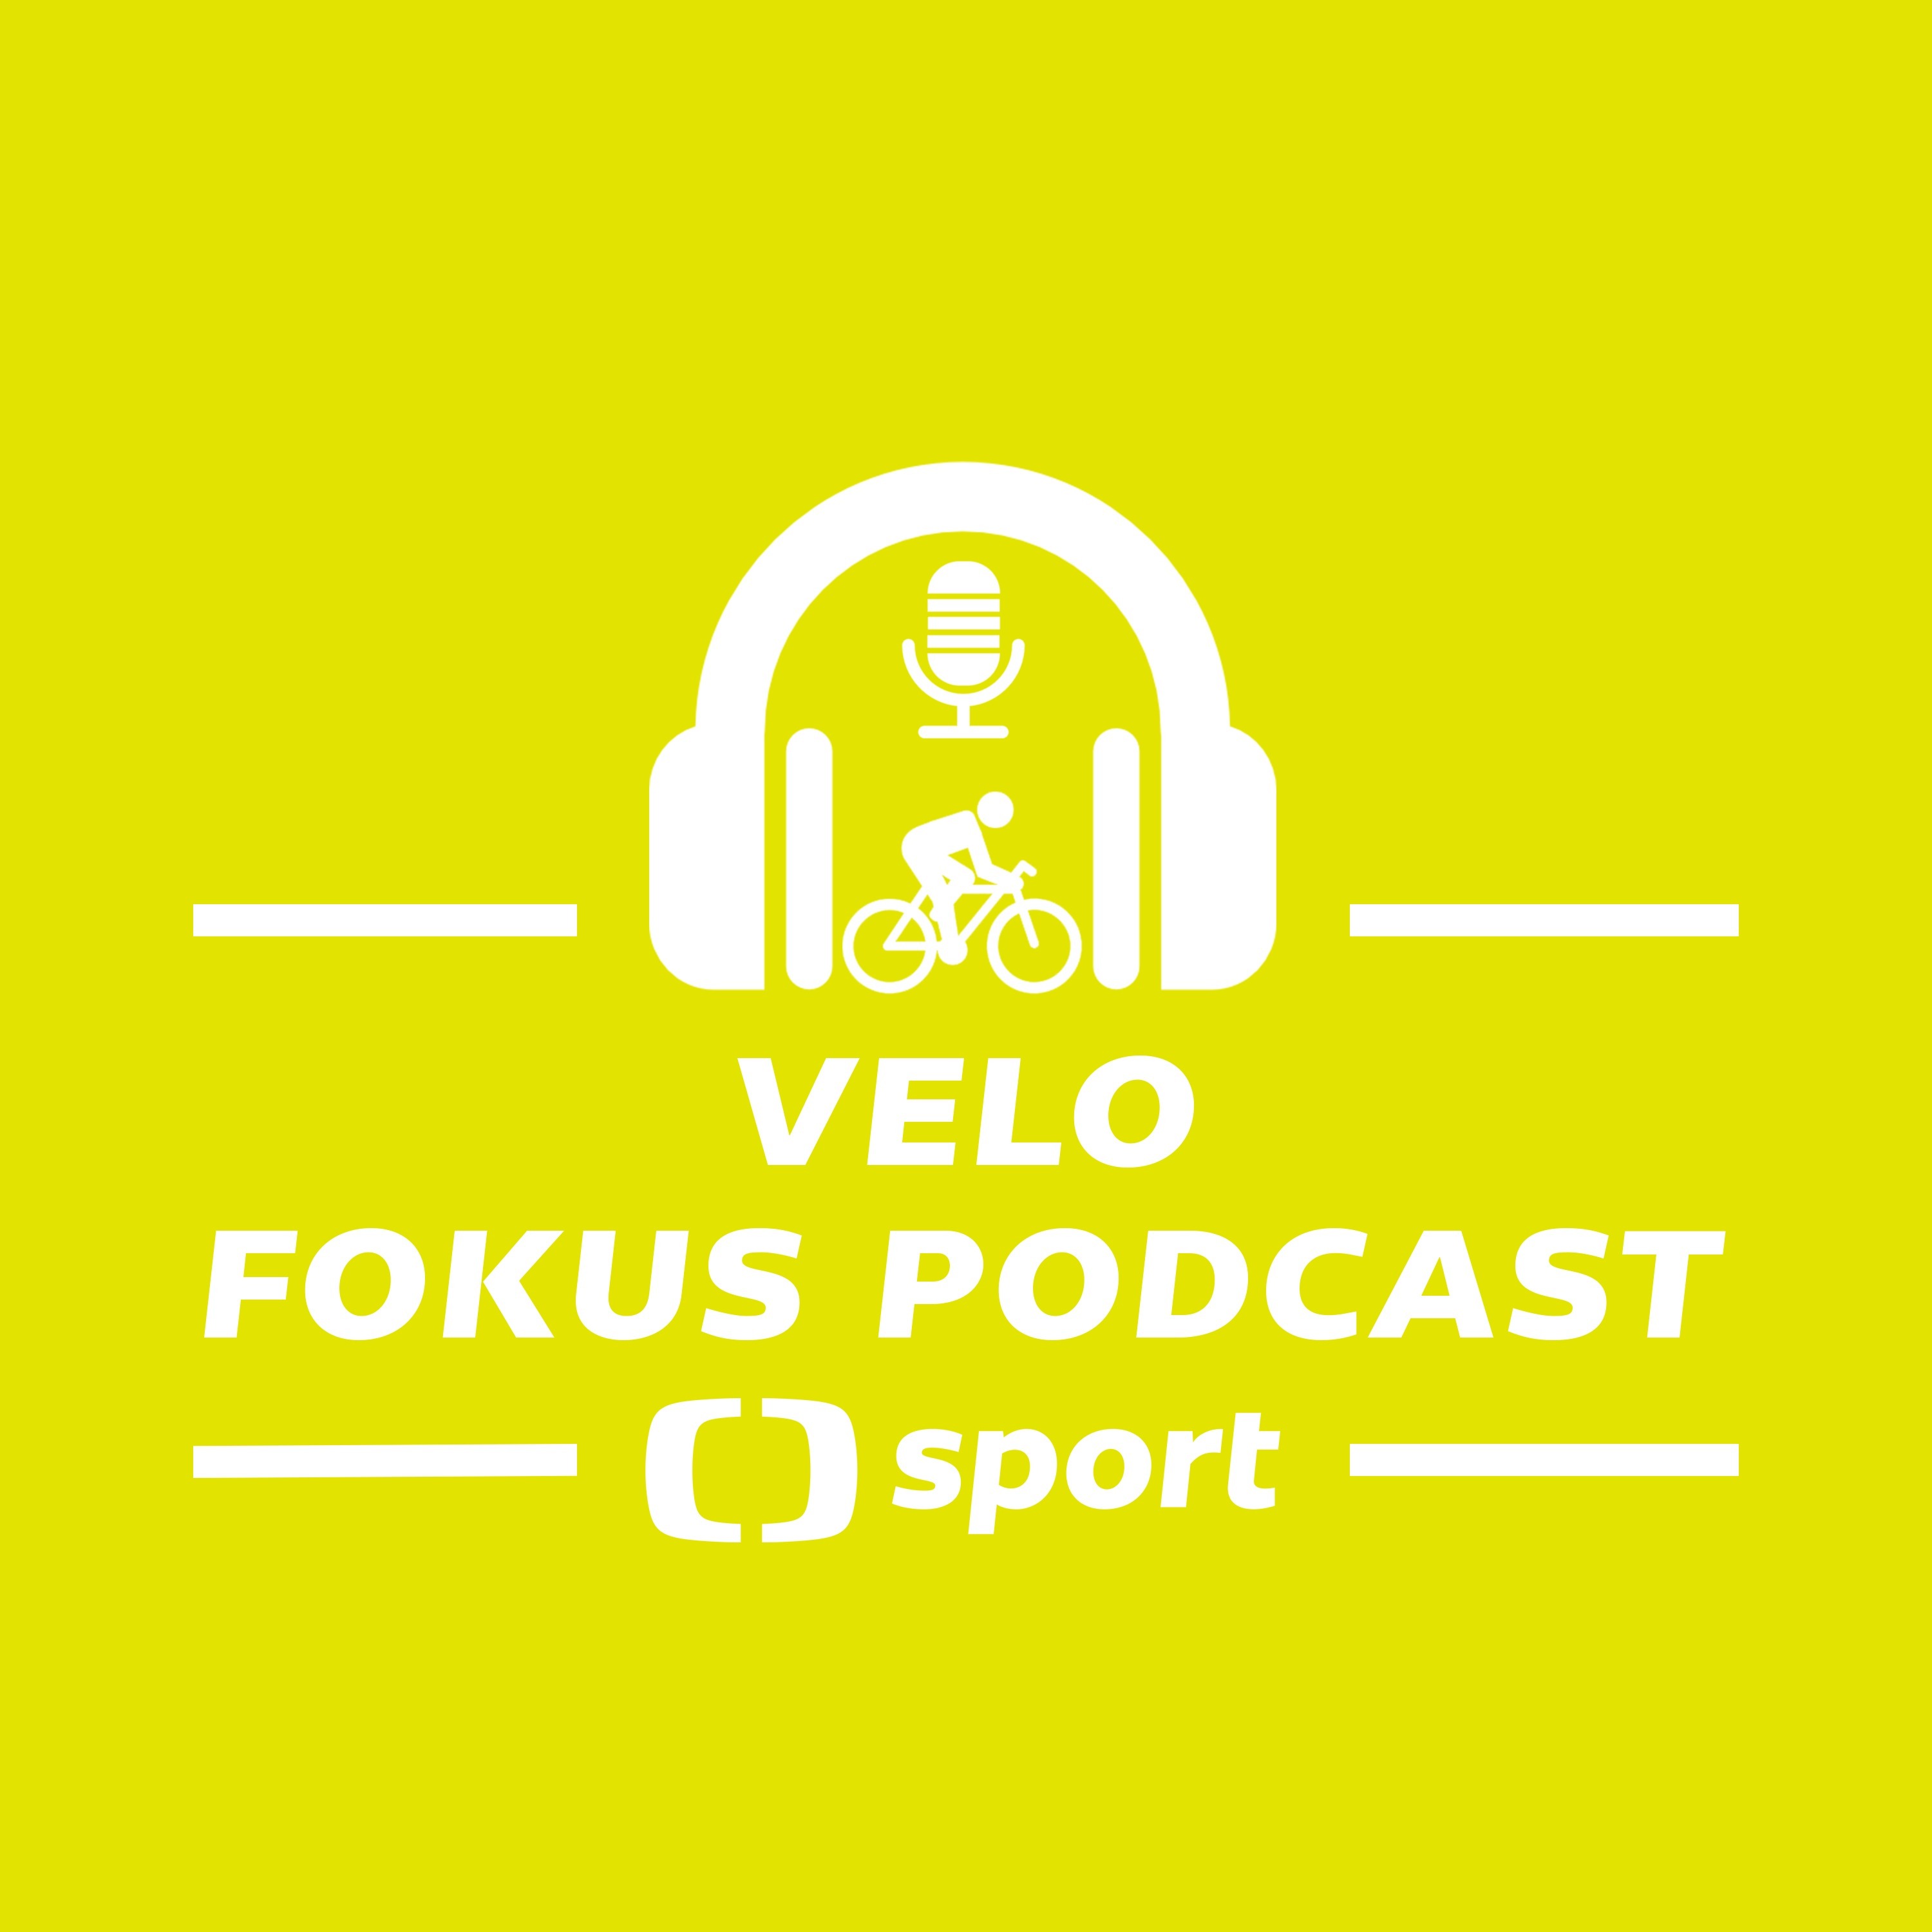 Velo fokus podcast: Giro je téměř na startu. Co přinese?